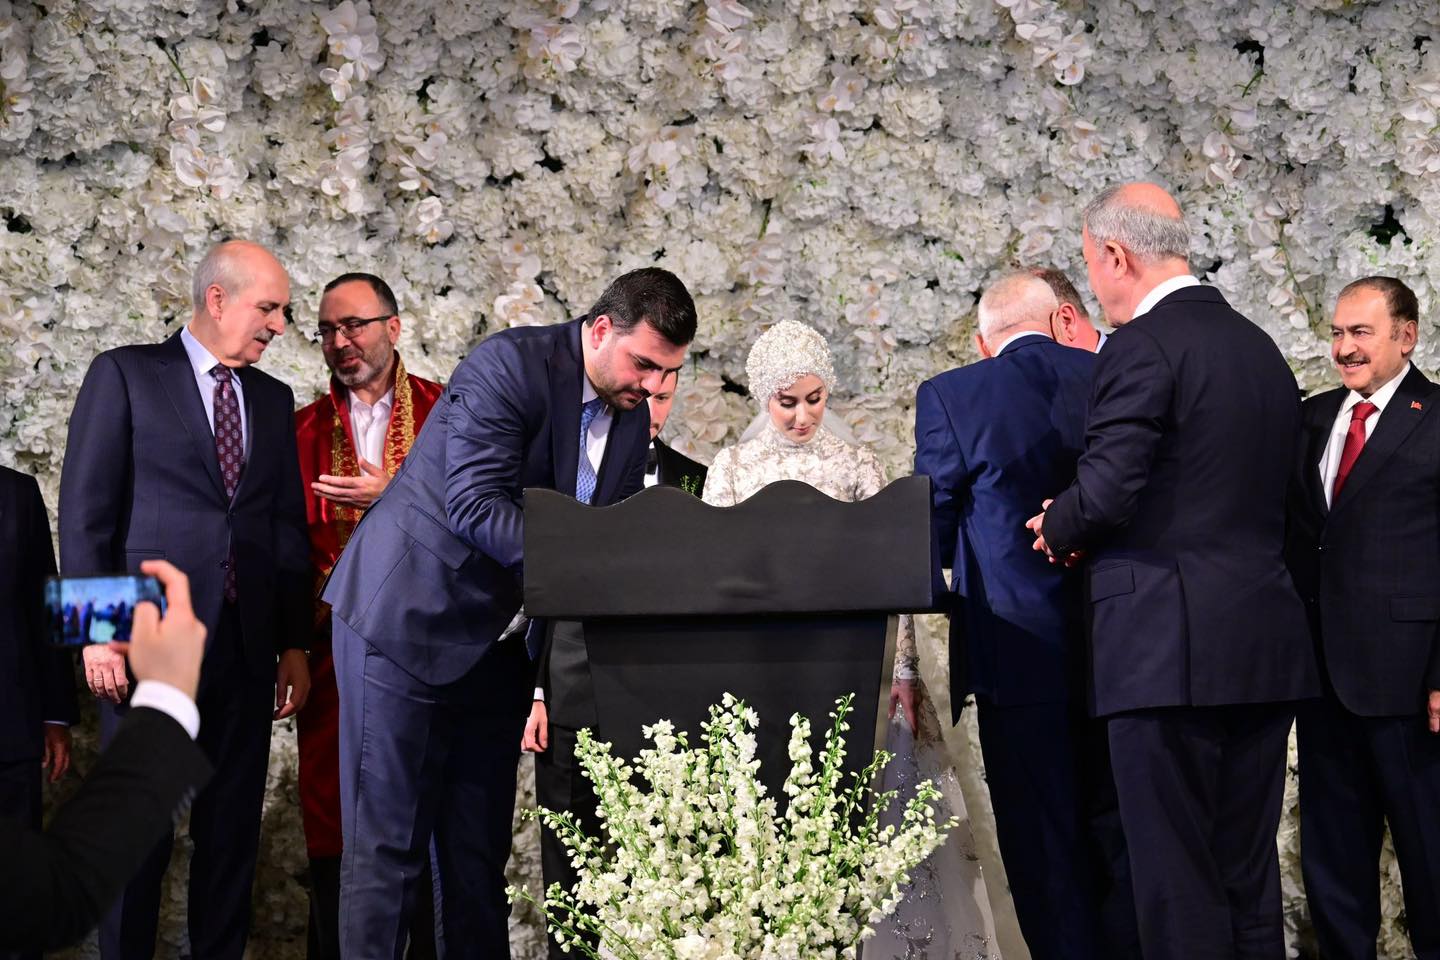 AK Parti İzmir Milletvekili Eyyüp Kadir İnan, Gençlik Kolları MKYK Üyesi Furkan Topaloğlu ve Kübra Hanım'ın Düğün Törenine Katıldı